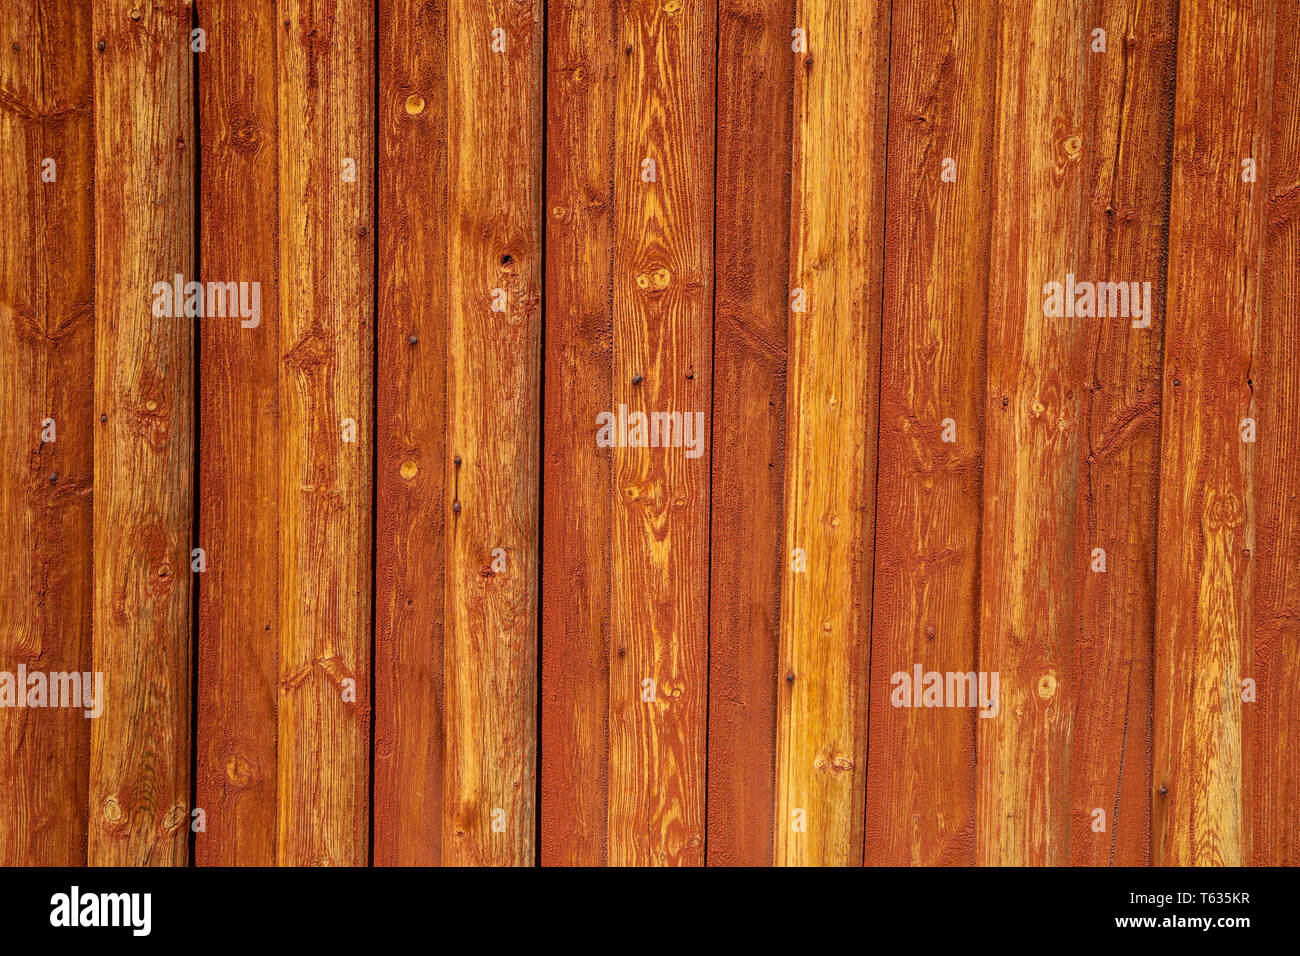 Tradizionale casa di legno in scandinavia con il suo colore rosso tavoloni Foto Stock